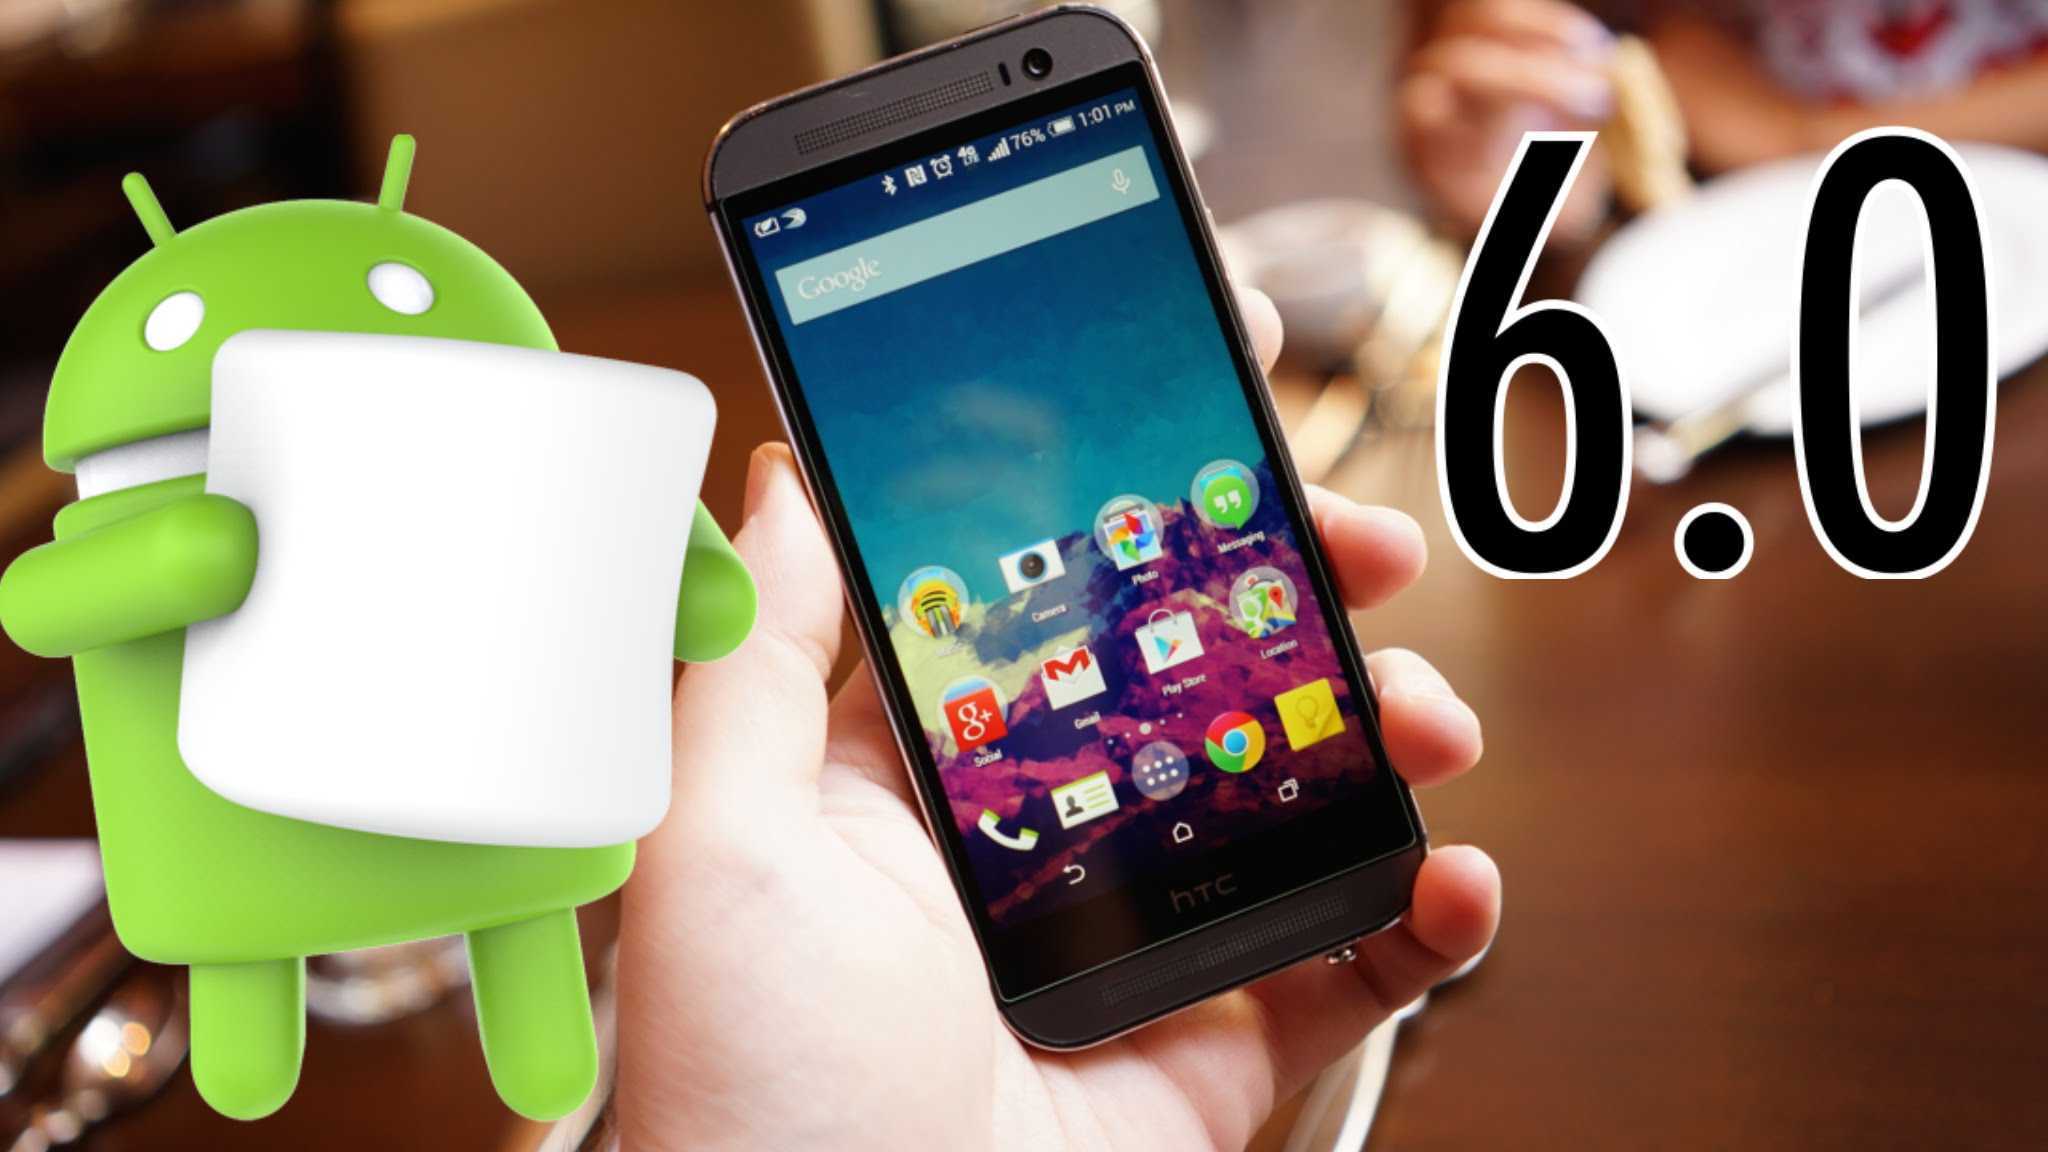 Всё что нужно знать про новый android 6.0 marshmallow (зефир) » новости и обзоры высоких технологий.